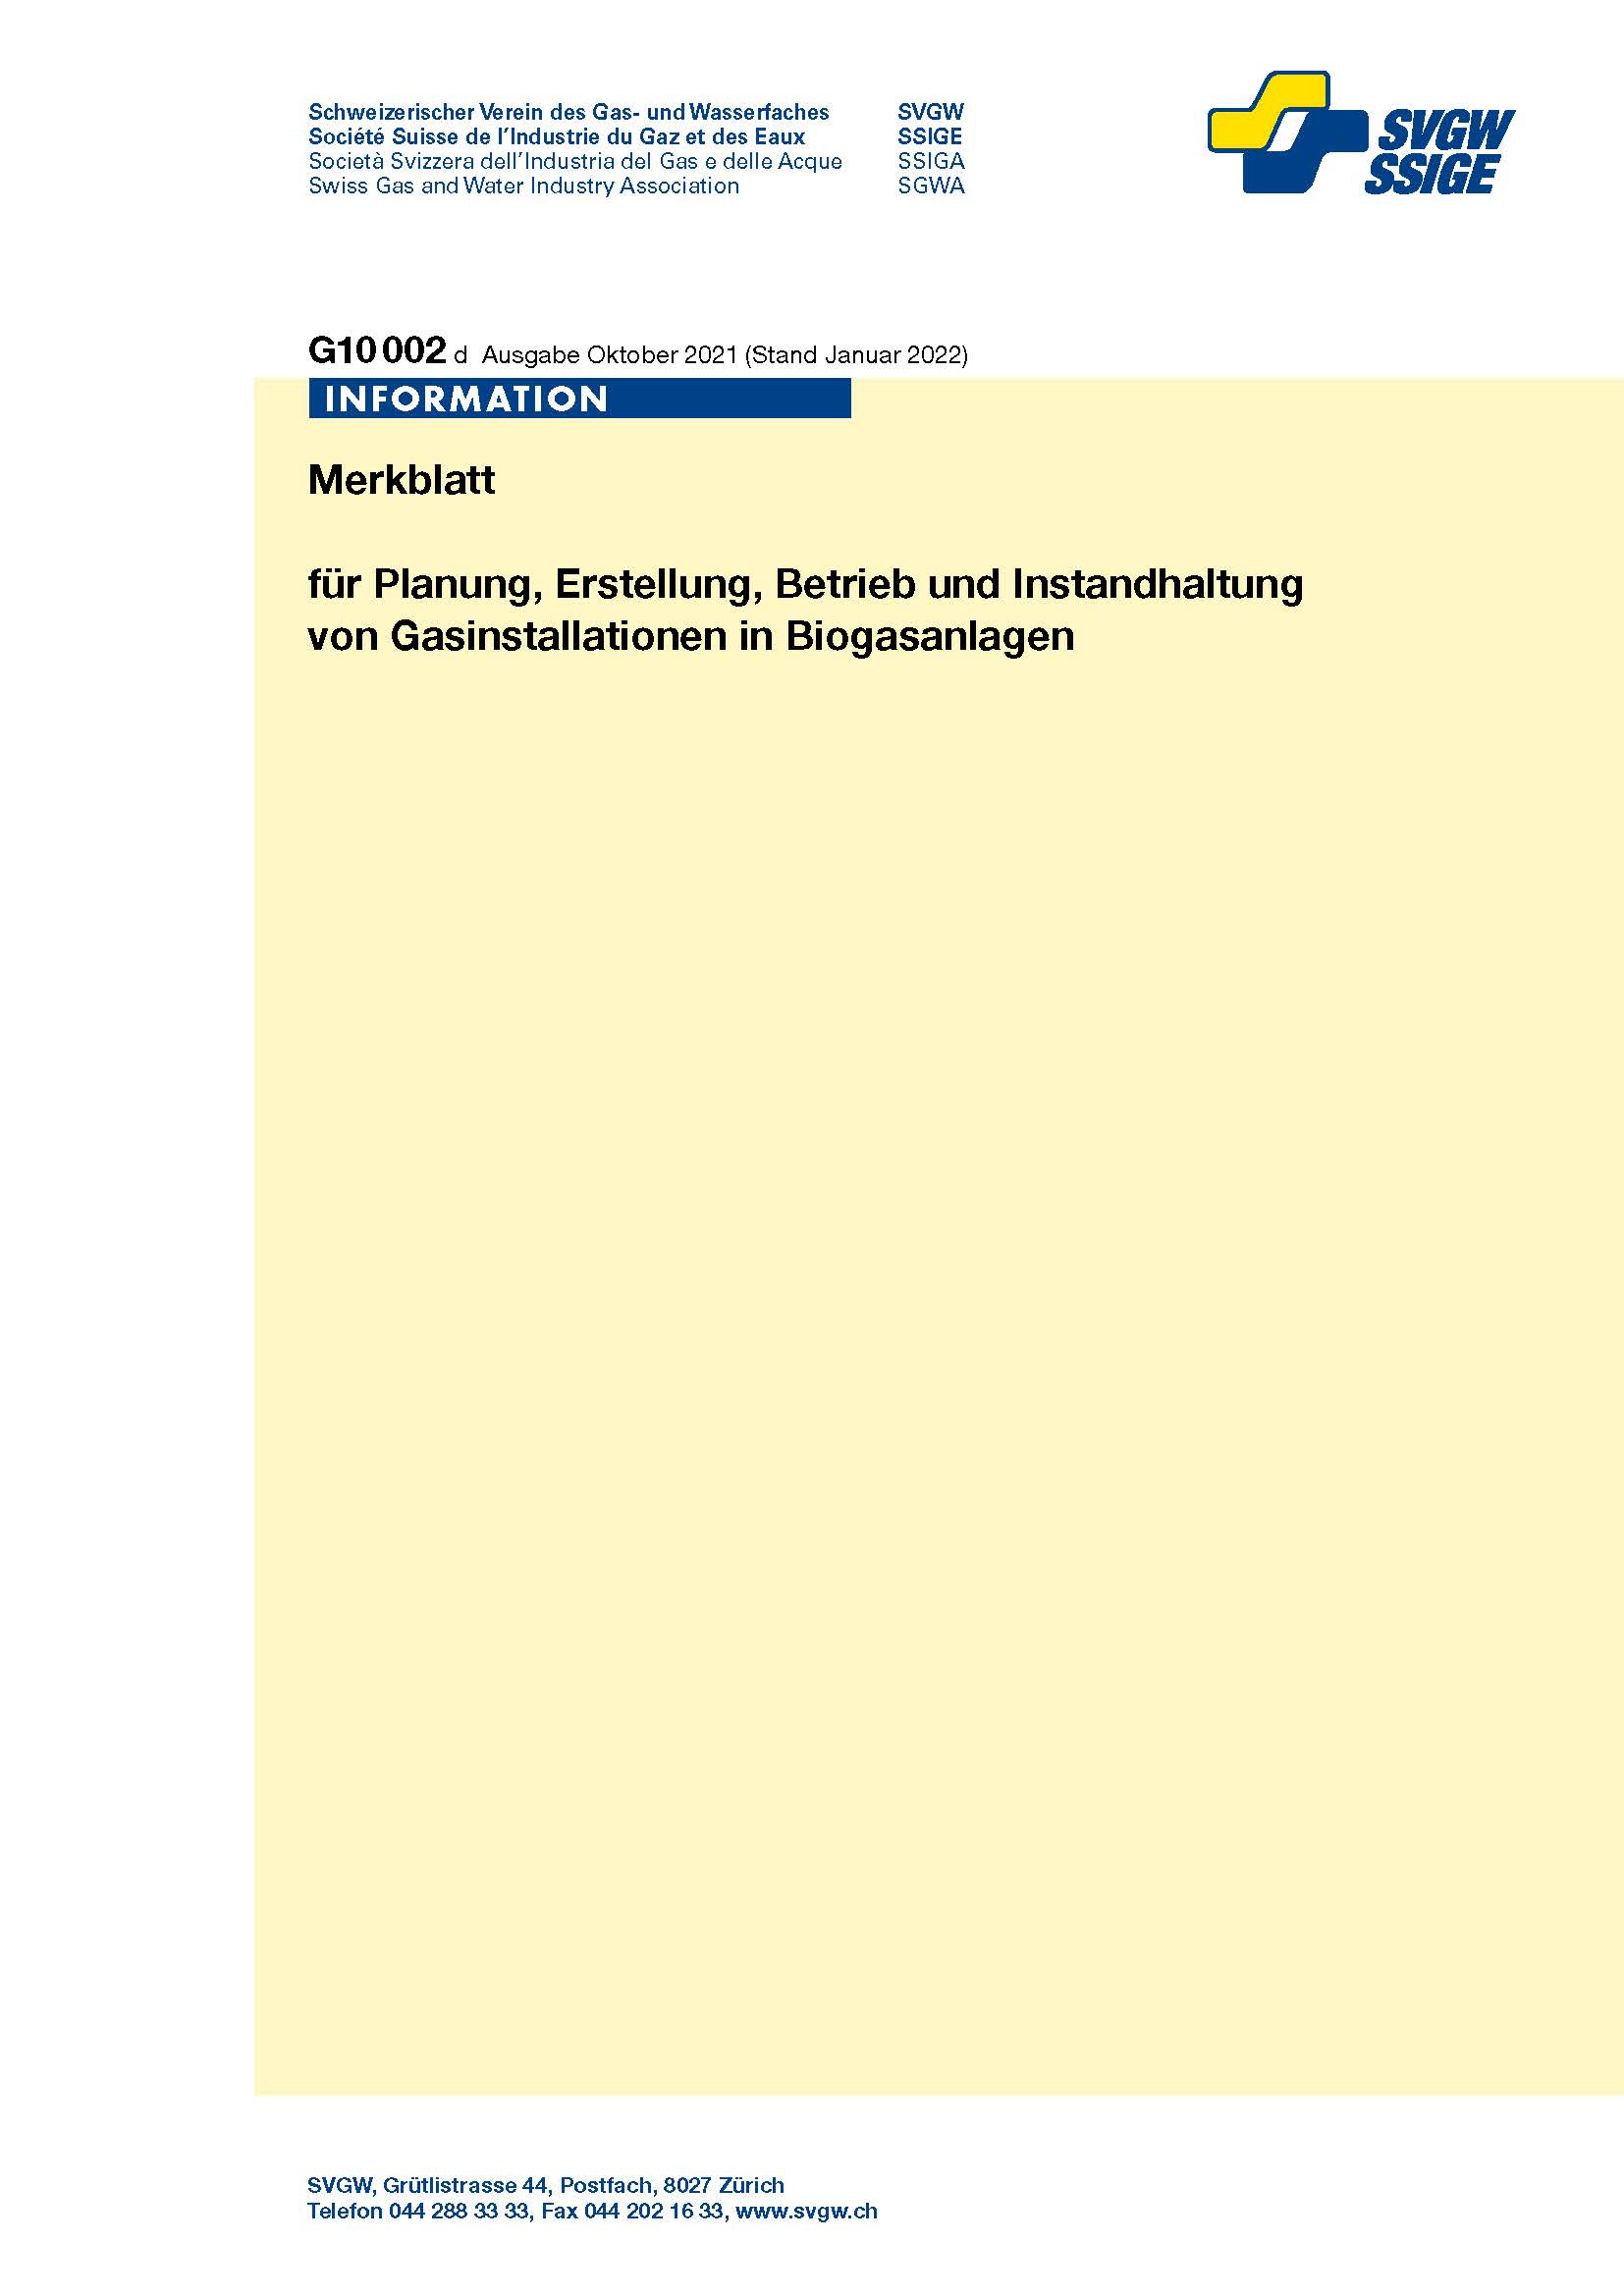 G10002 d; Merkblatt für Planung, Erstellung, Betrieb und Instandhaltung von Gasinstallationen in Biogasanlagen